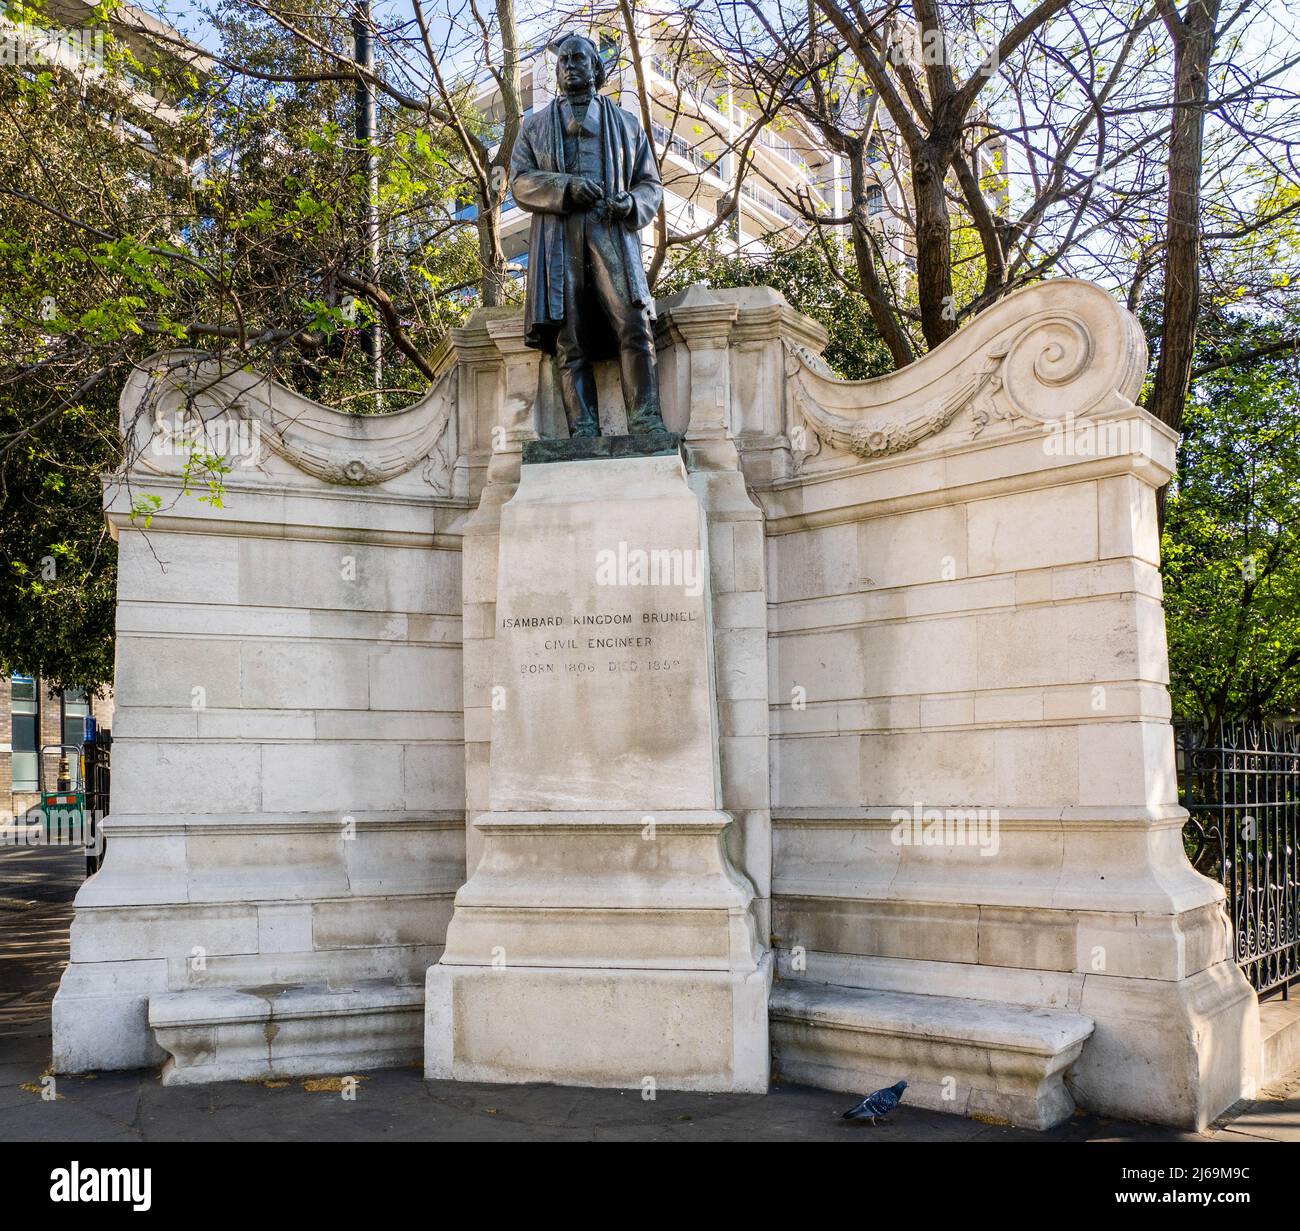 Mémorial à l'ingénieur victorien Isambard Kingdom Brunel sur l'Embankment près de la Tamise à Londres, Royaume-Uni Banque D'Images